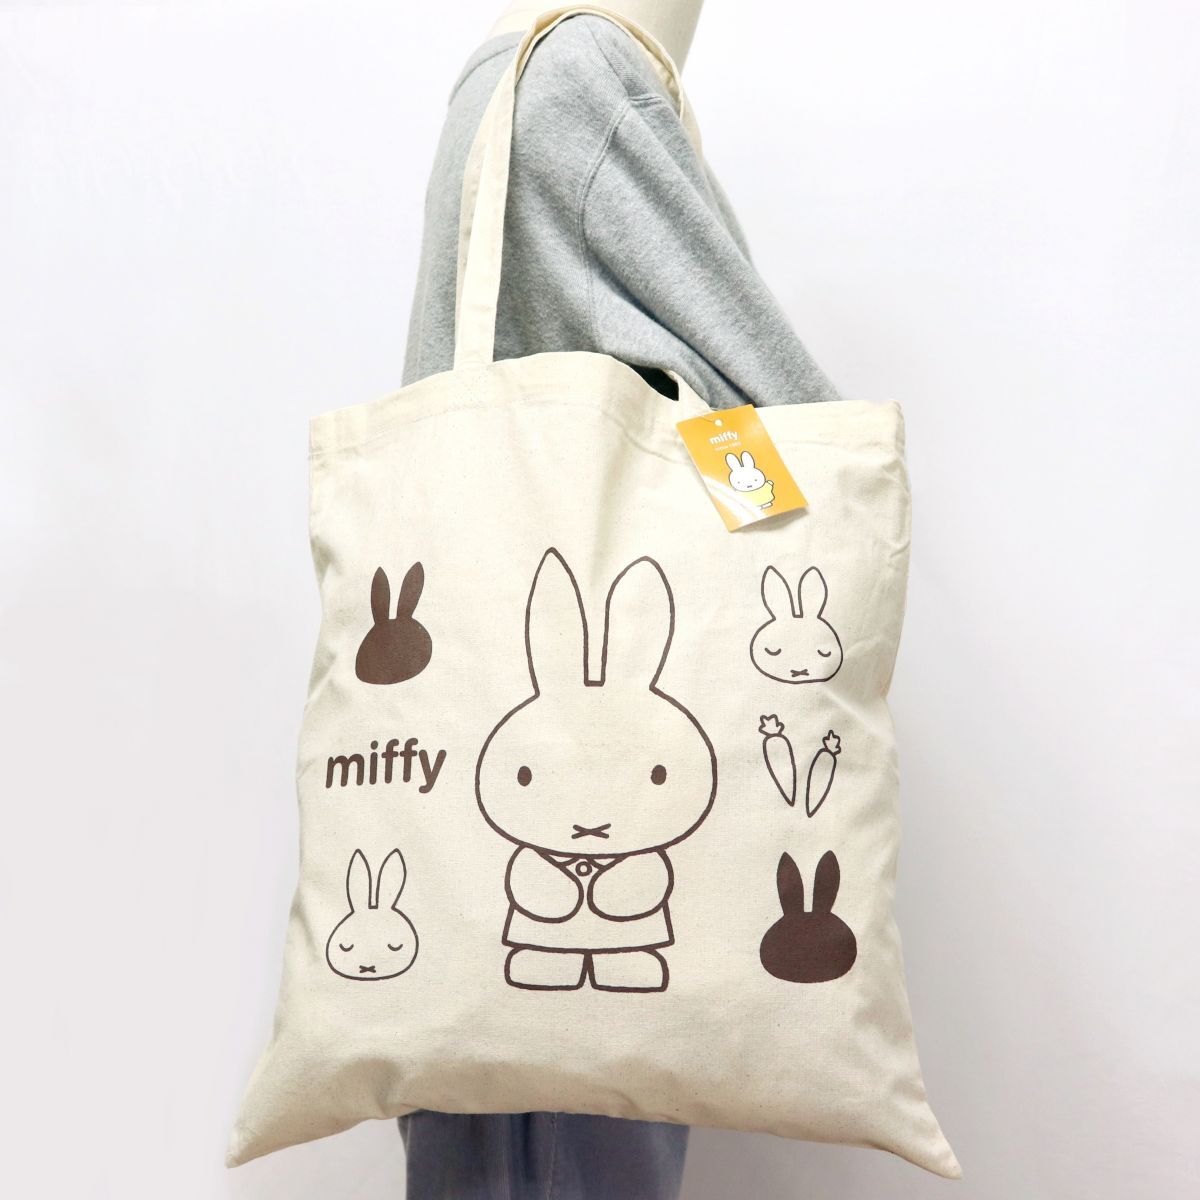 * стоимость доставки 390 иен возможность товар Miffy MIFFY... Chan новый товар брезент парусина большая сумка BAG портфель сумка [MIFFY-BRN1N] один шесть *QWER*